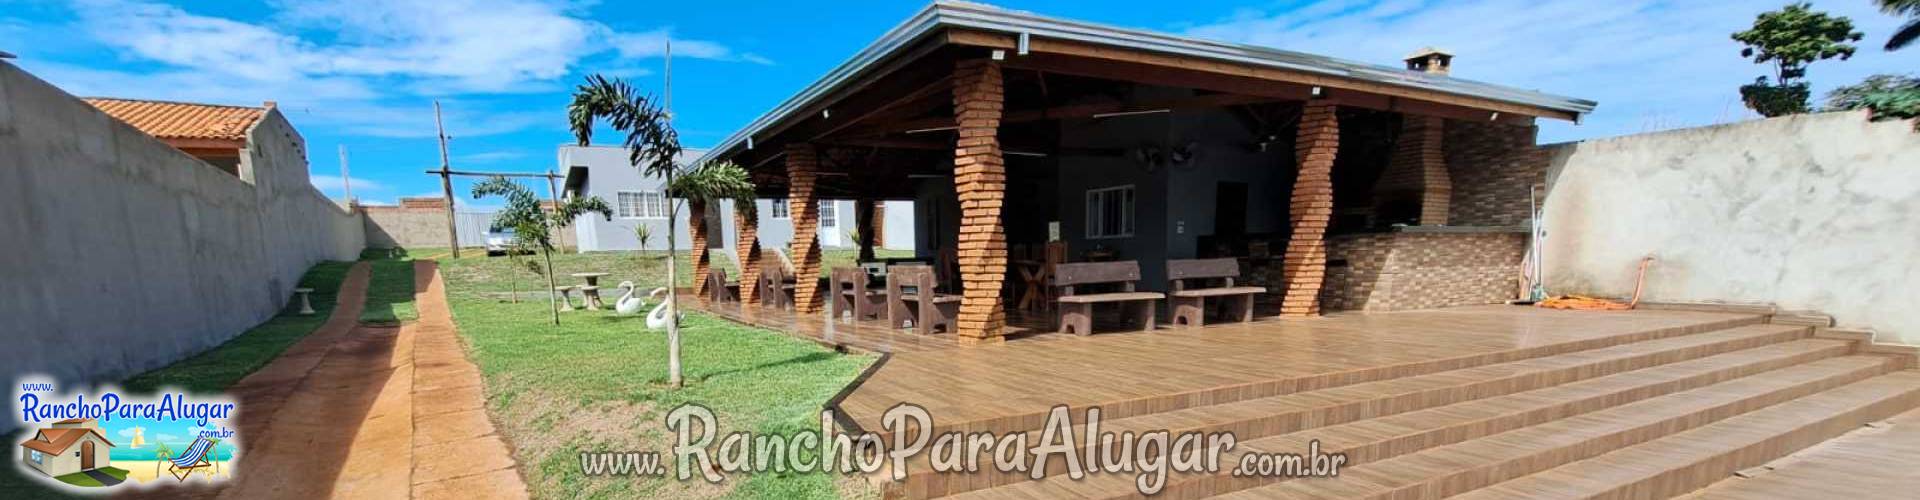 Rancho Pontal do Rio Grande 1 para Alugar em Miguelopolis